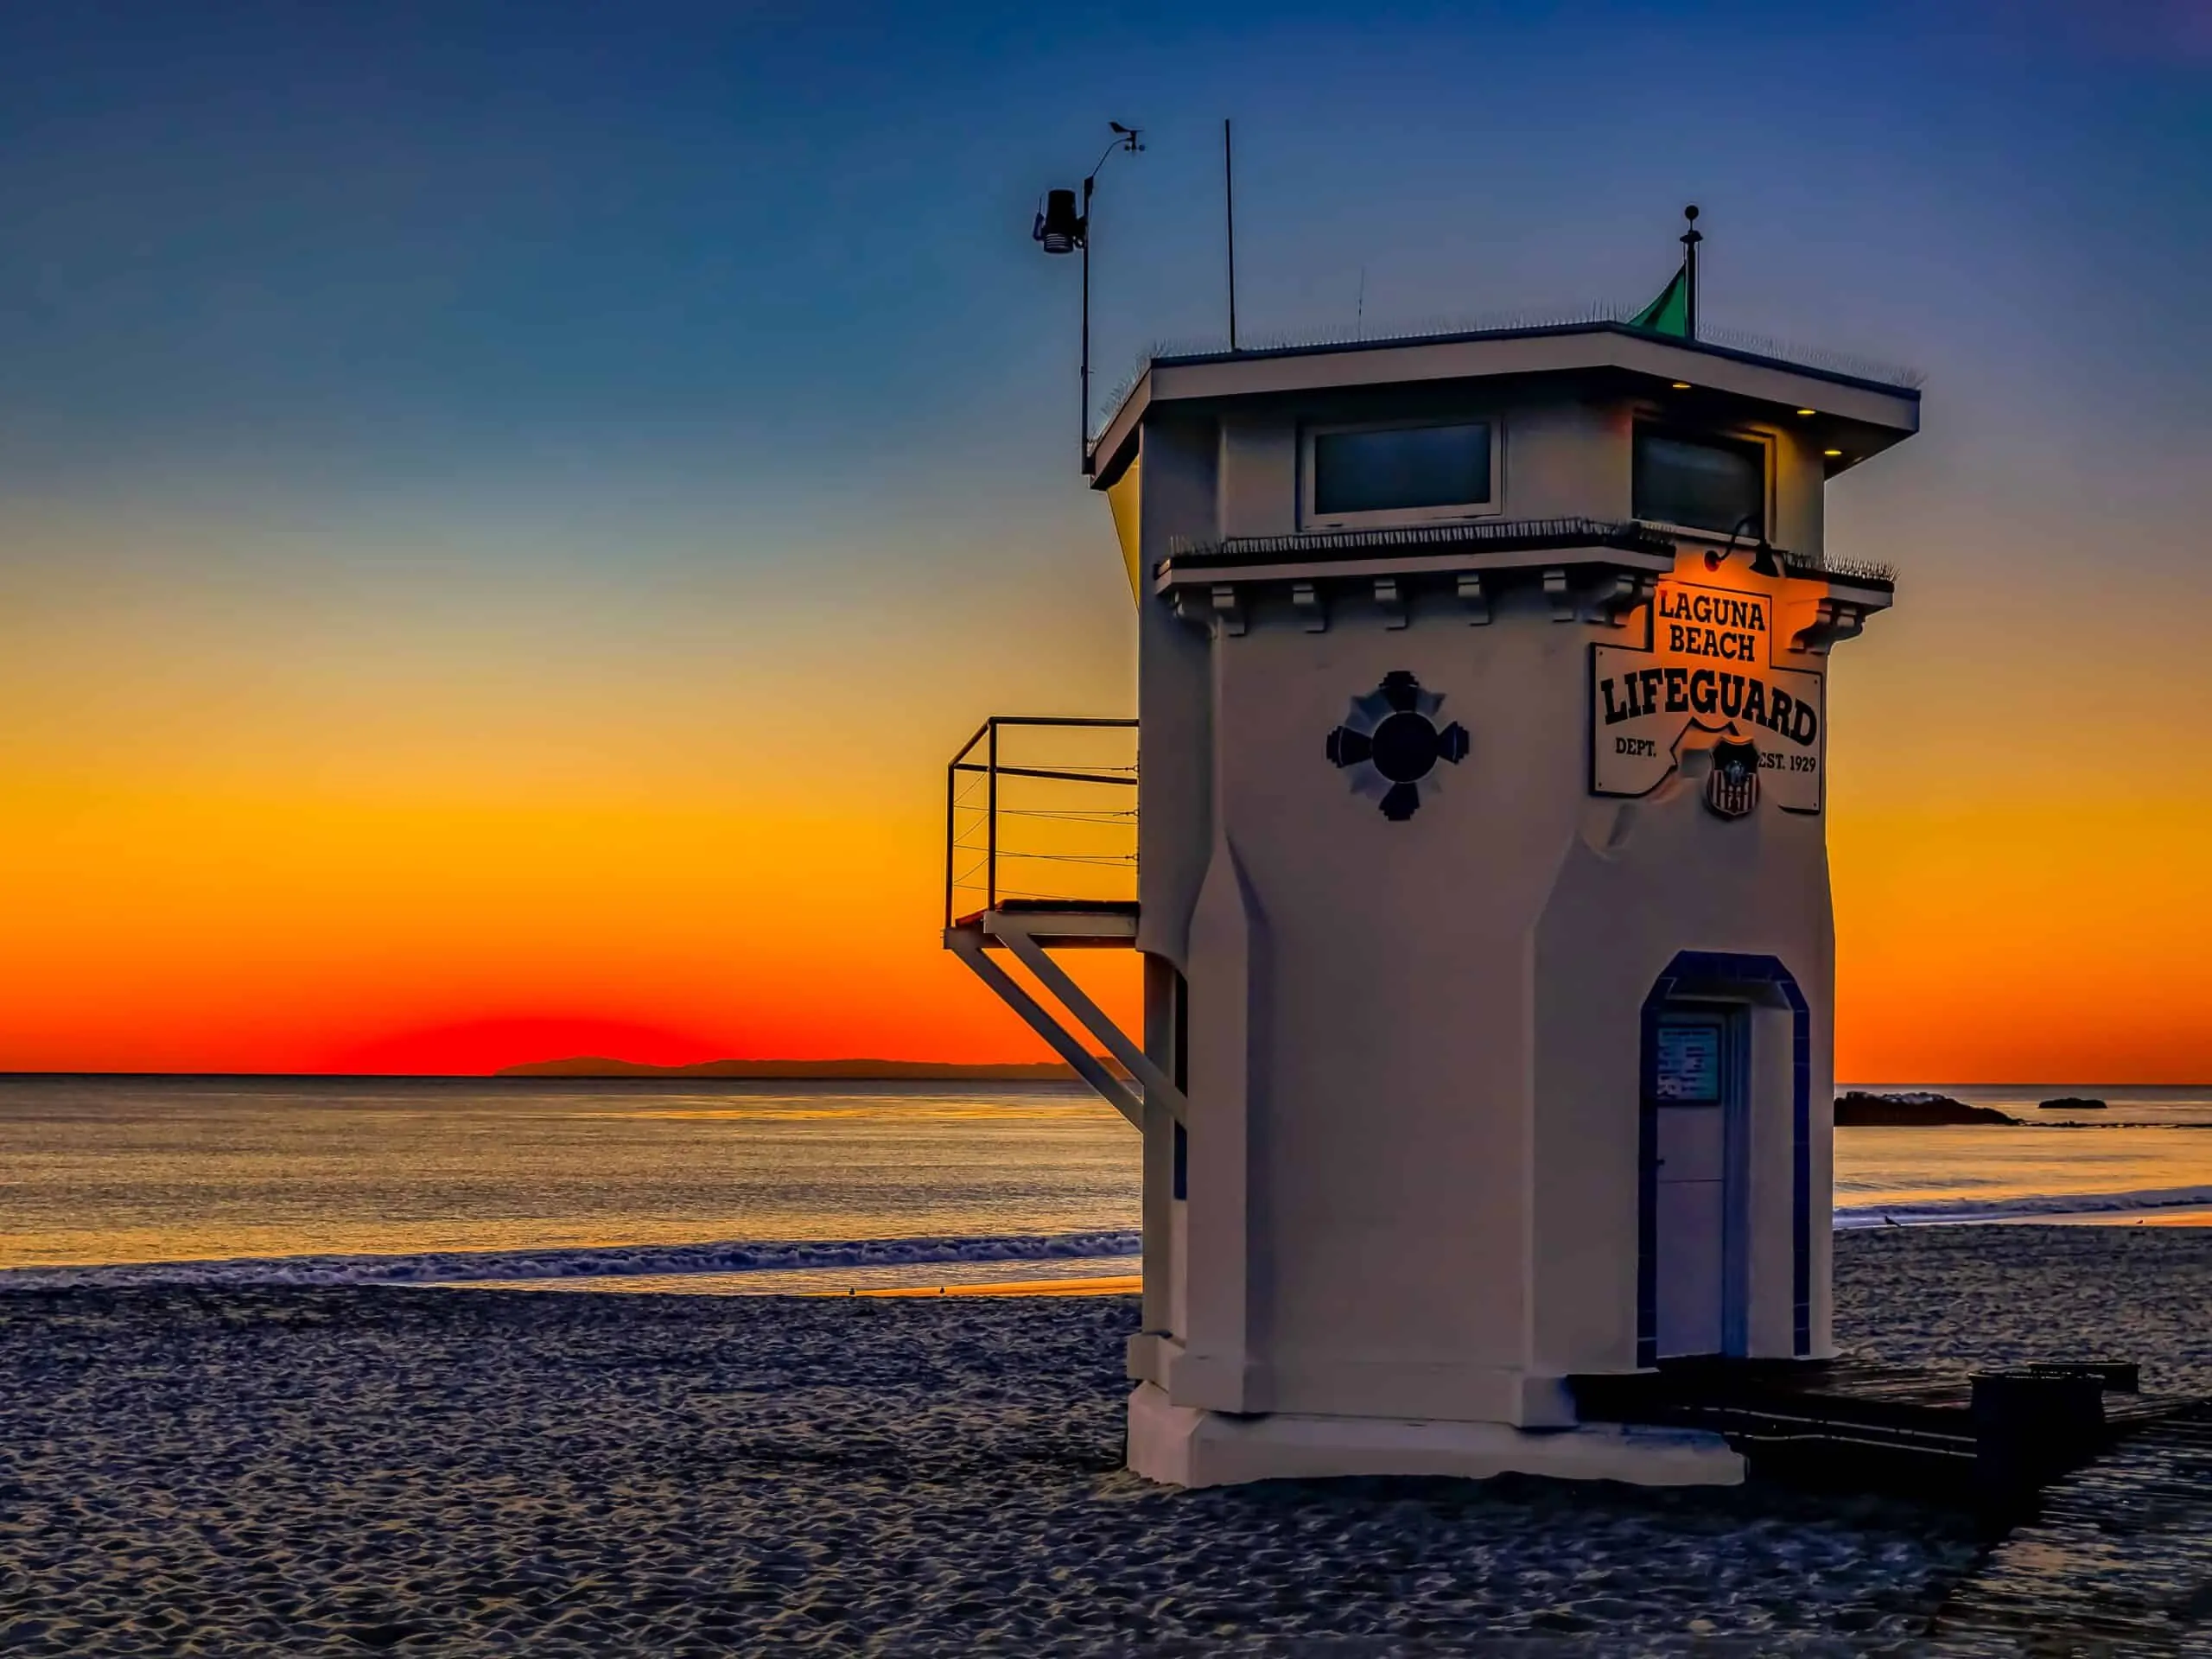 Lifeguard Tower Main Beach, Laguna Beach, CA